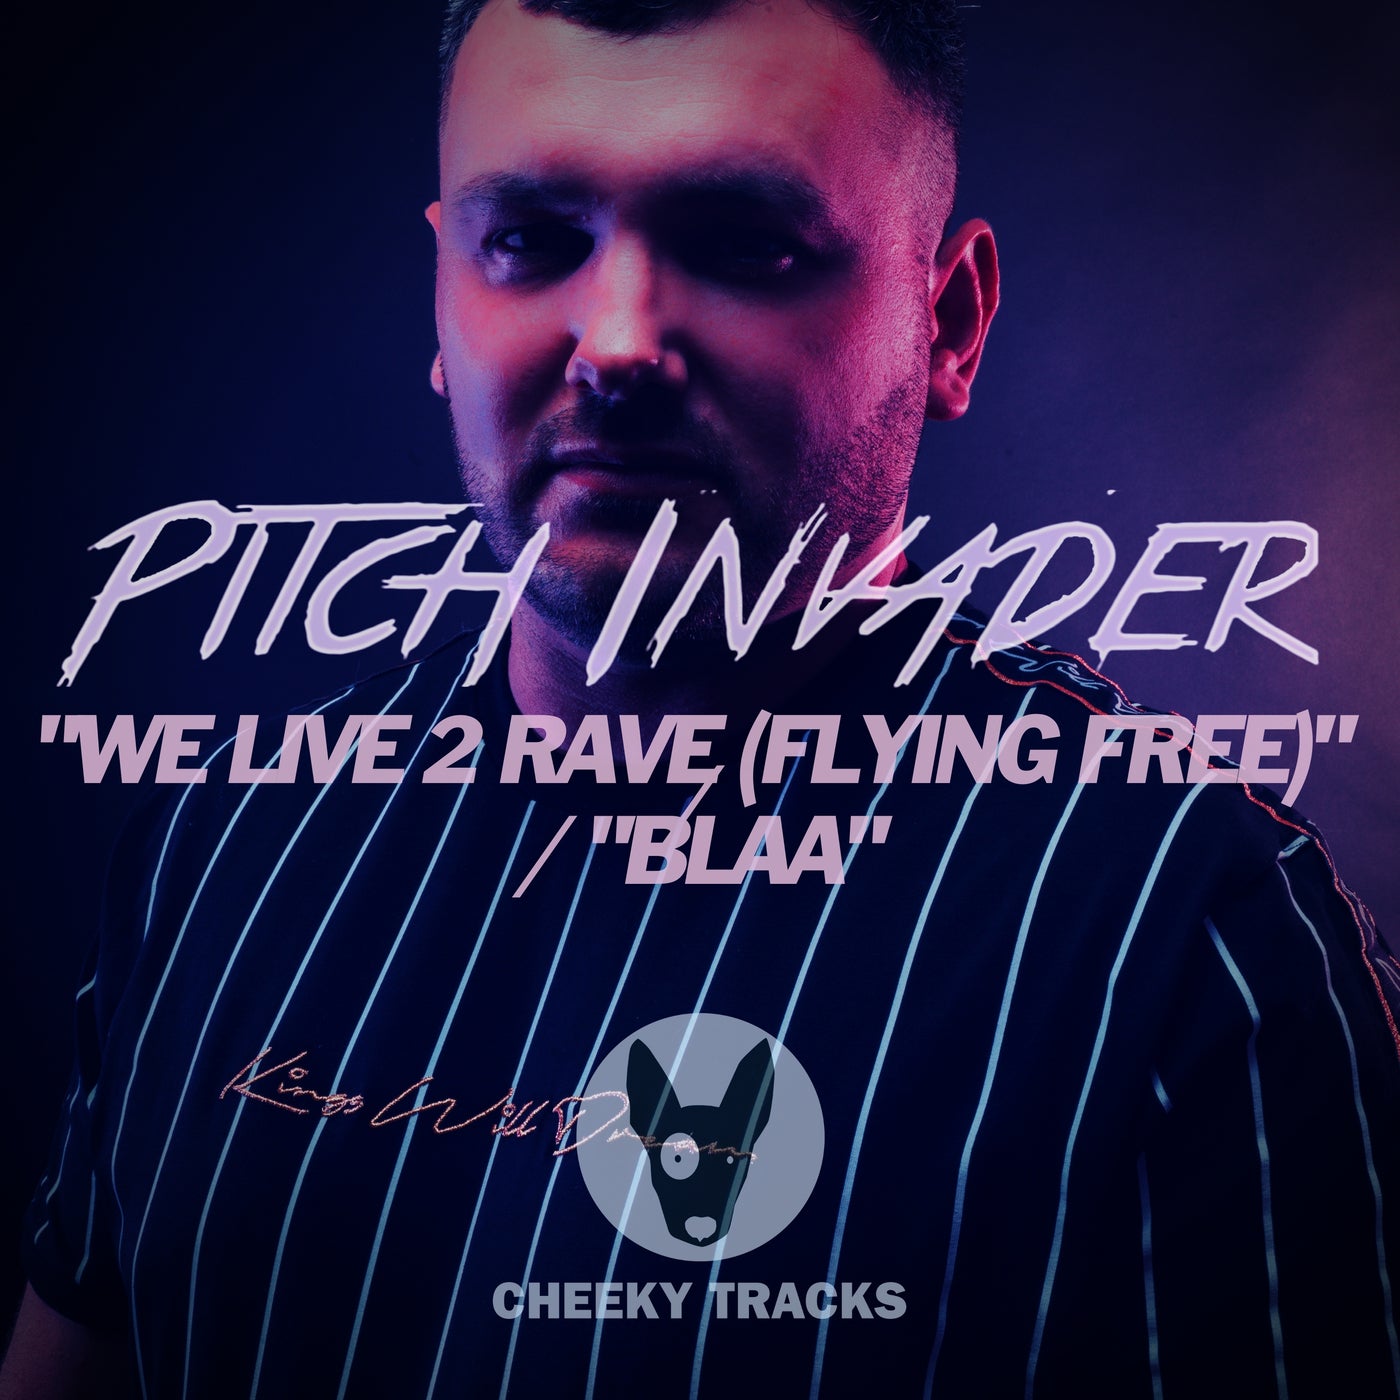 We Live 2 Rave (Flying Free) / Blaa